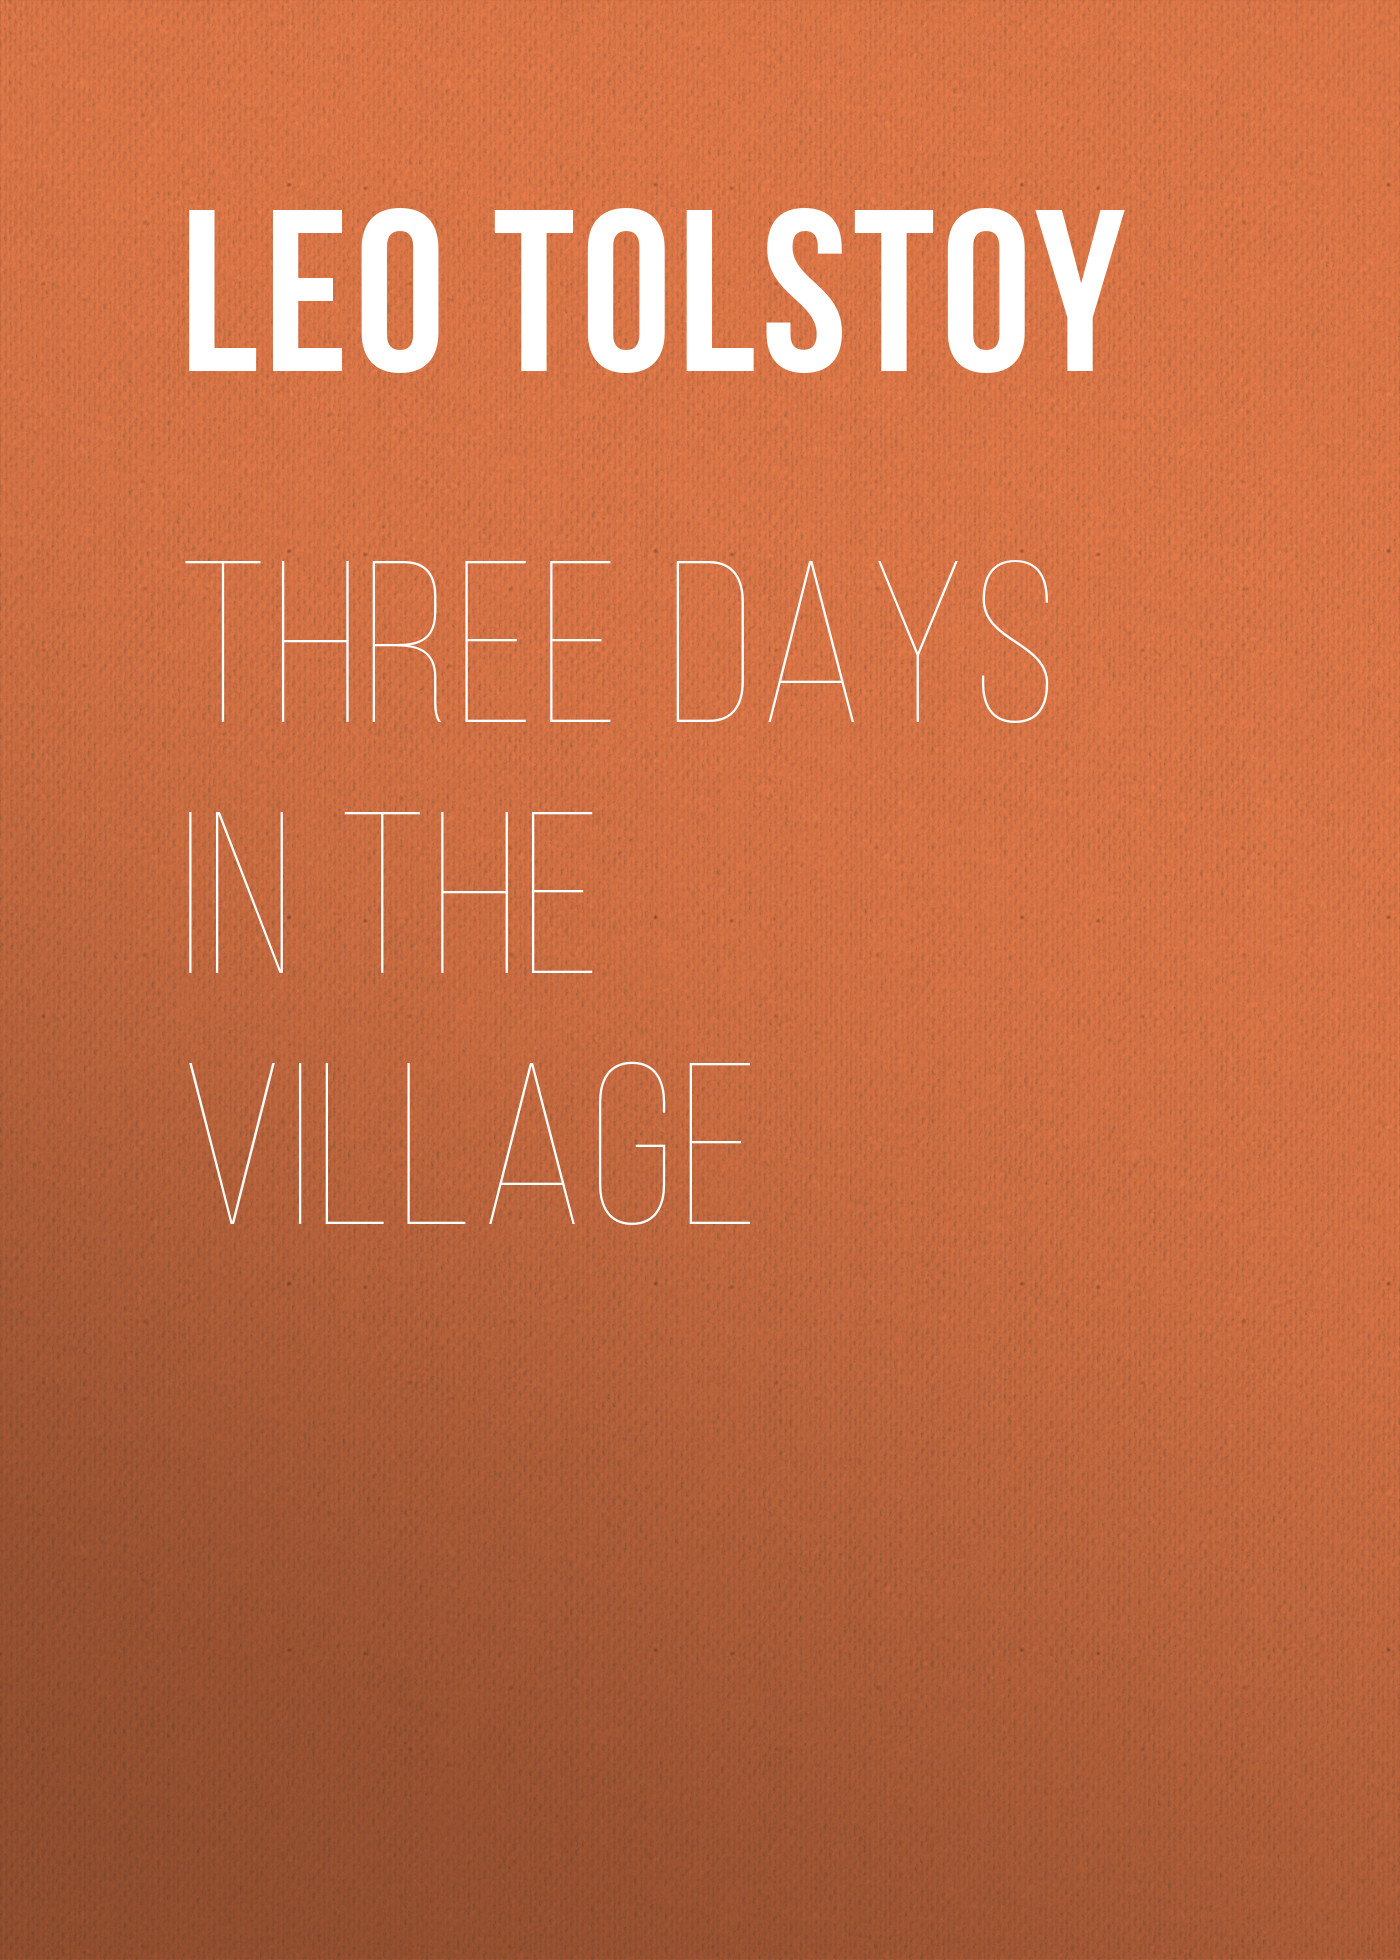 Книга Three Days in the Village из серии , созданная Leo Tolstoy, может относится к жанру Русская классика, Литература 19 века, Классическая проза, Иностранные языки. Стоимость электронной книги Three Days in the Village с идентификатором 23146579 составляет 5.99 руб.